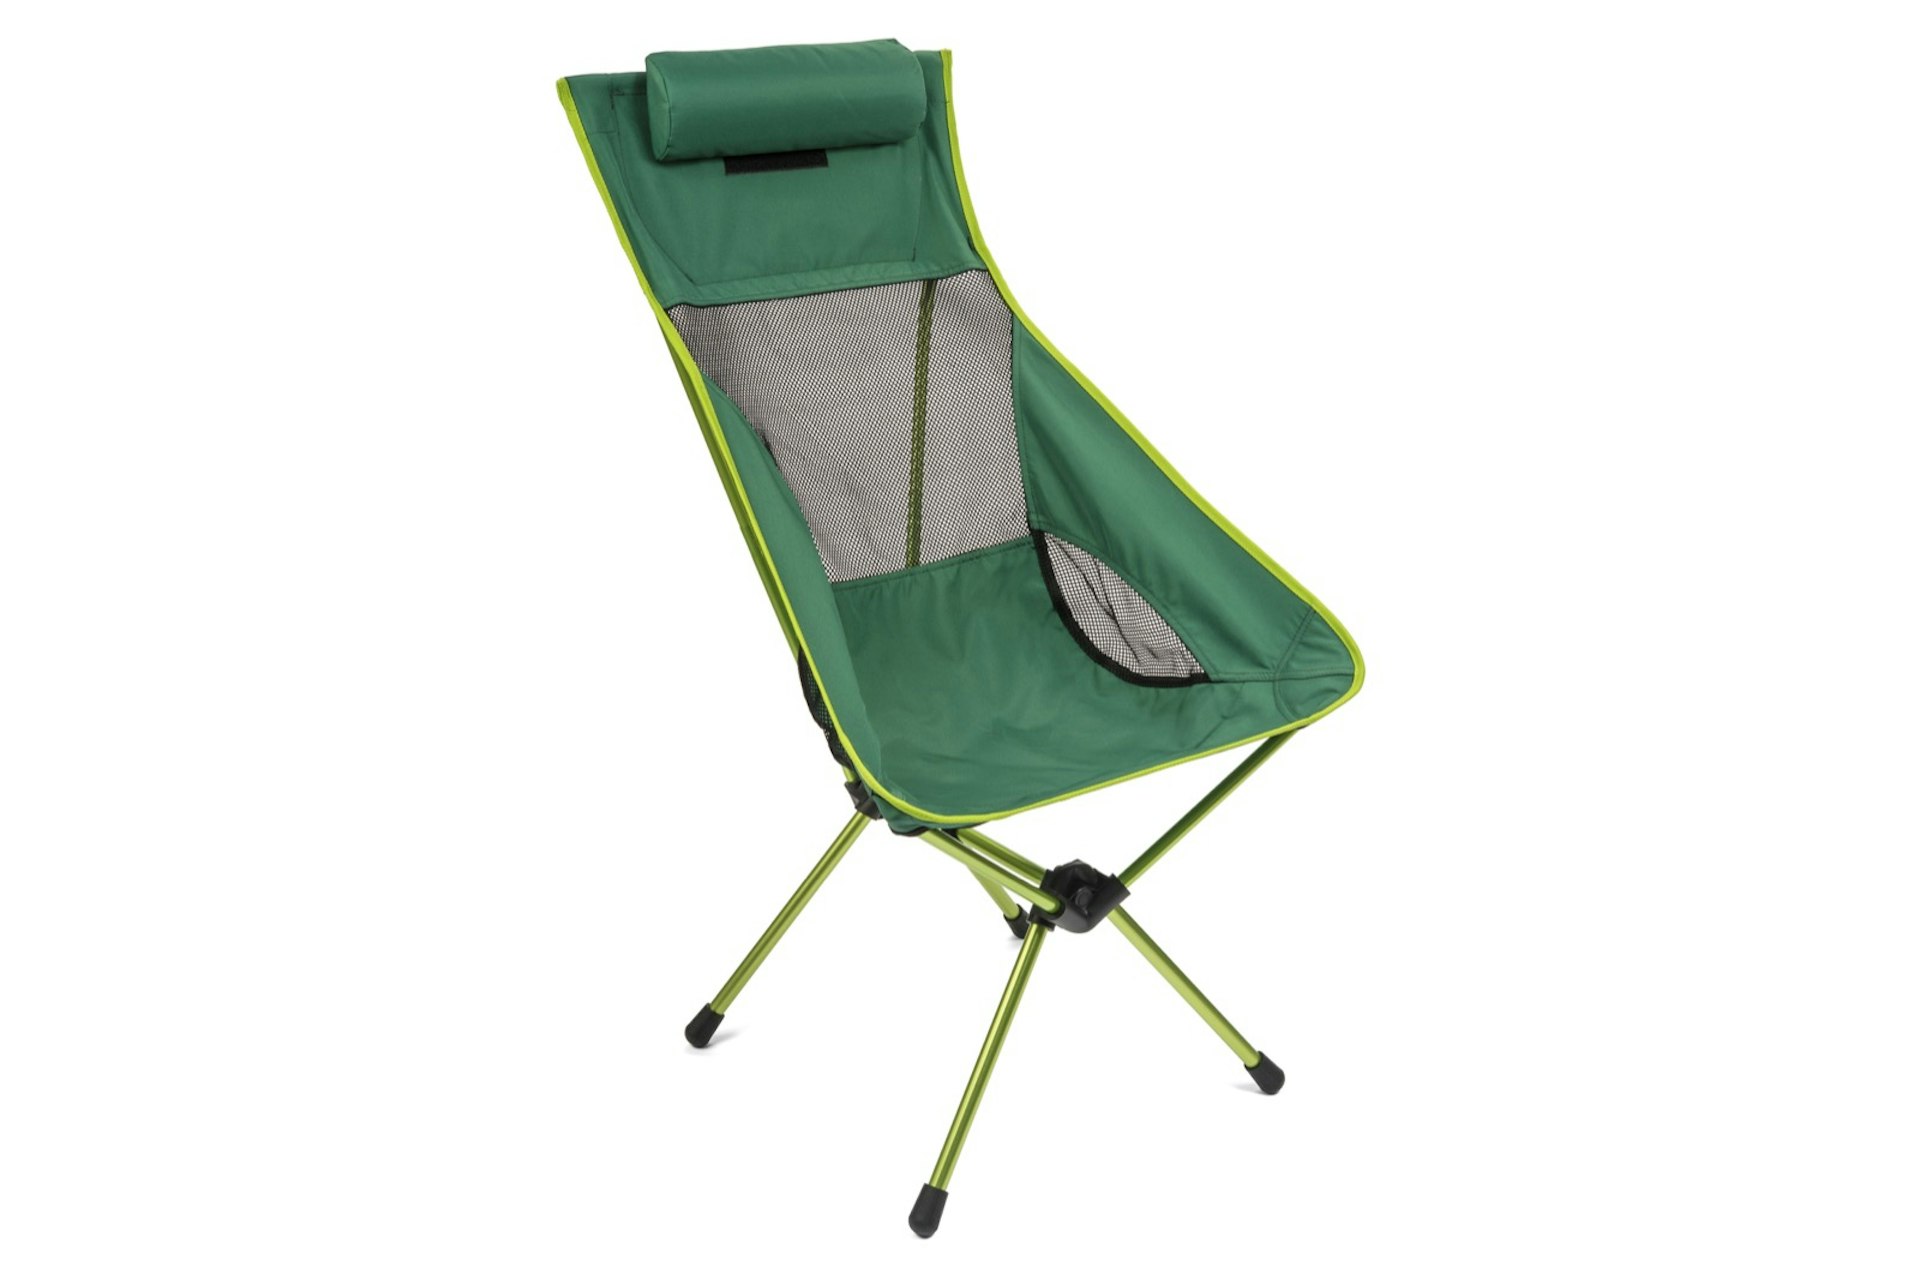 A green camp chair; beach gear